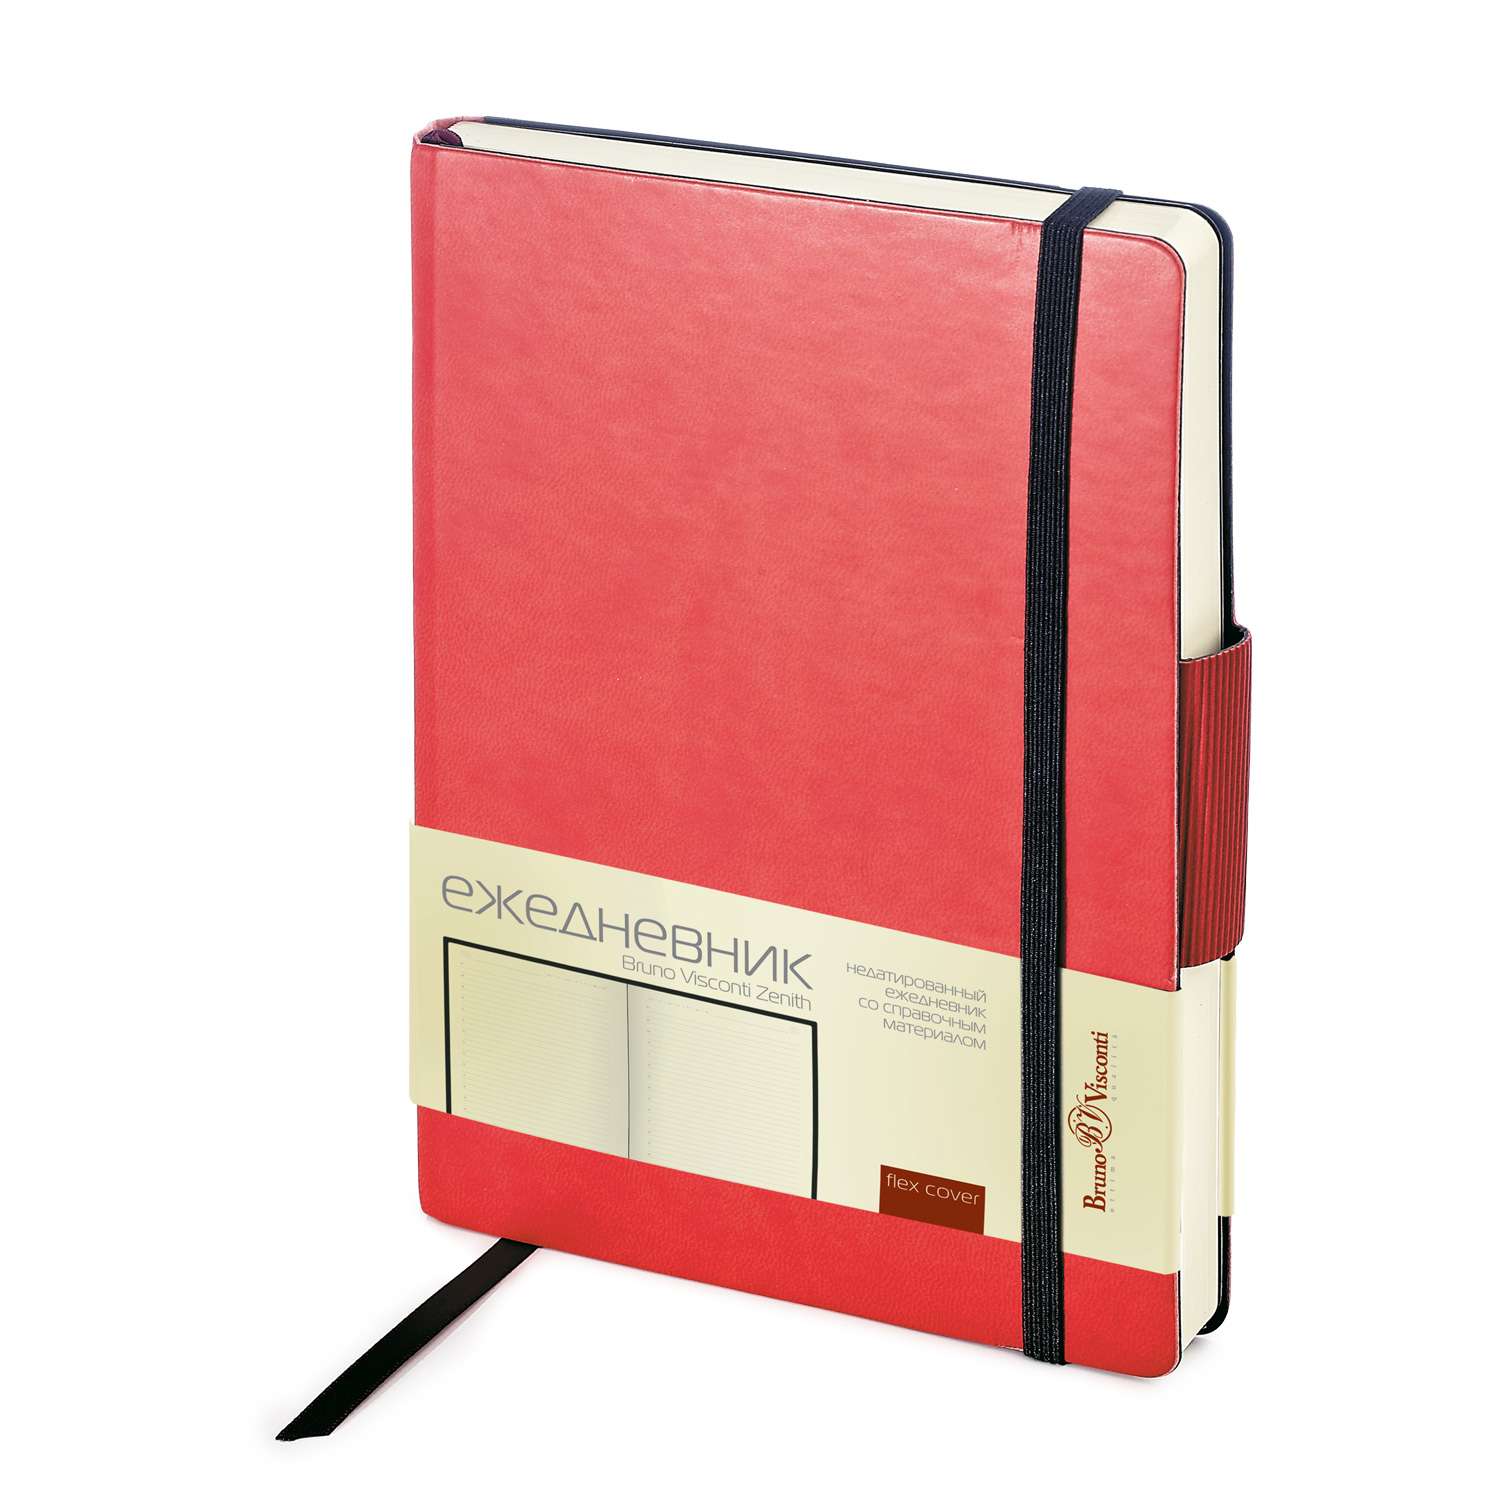 Набор подарочный Bruno Visconti Zenith красный А5 144х213 мм ежедневник и ручка - фото 2